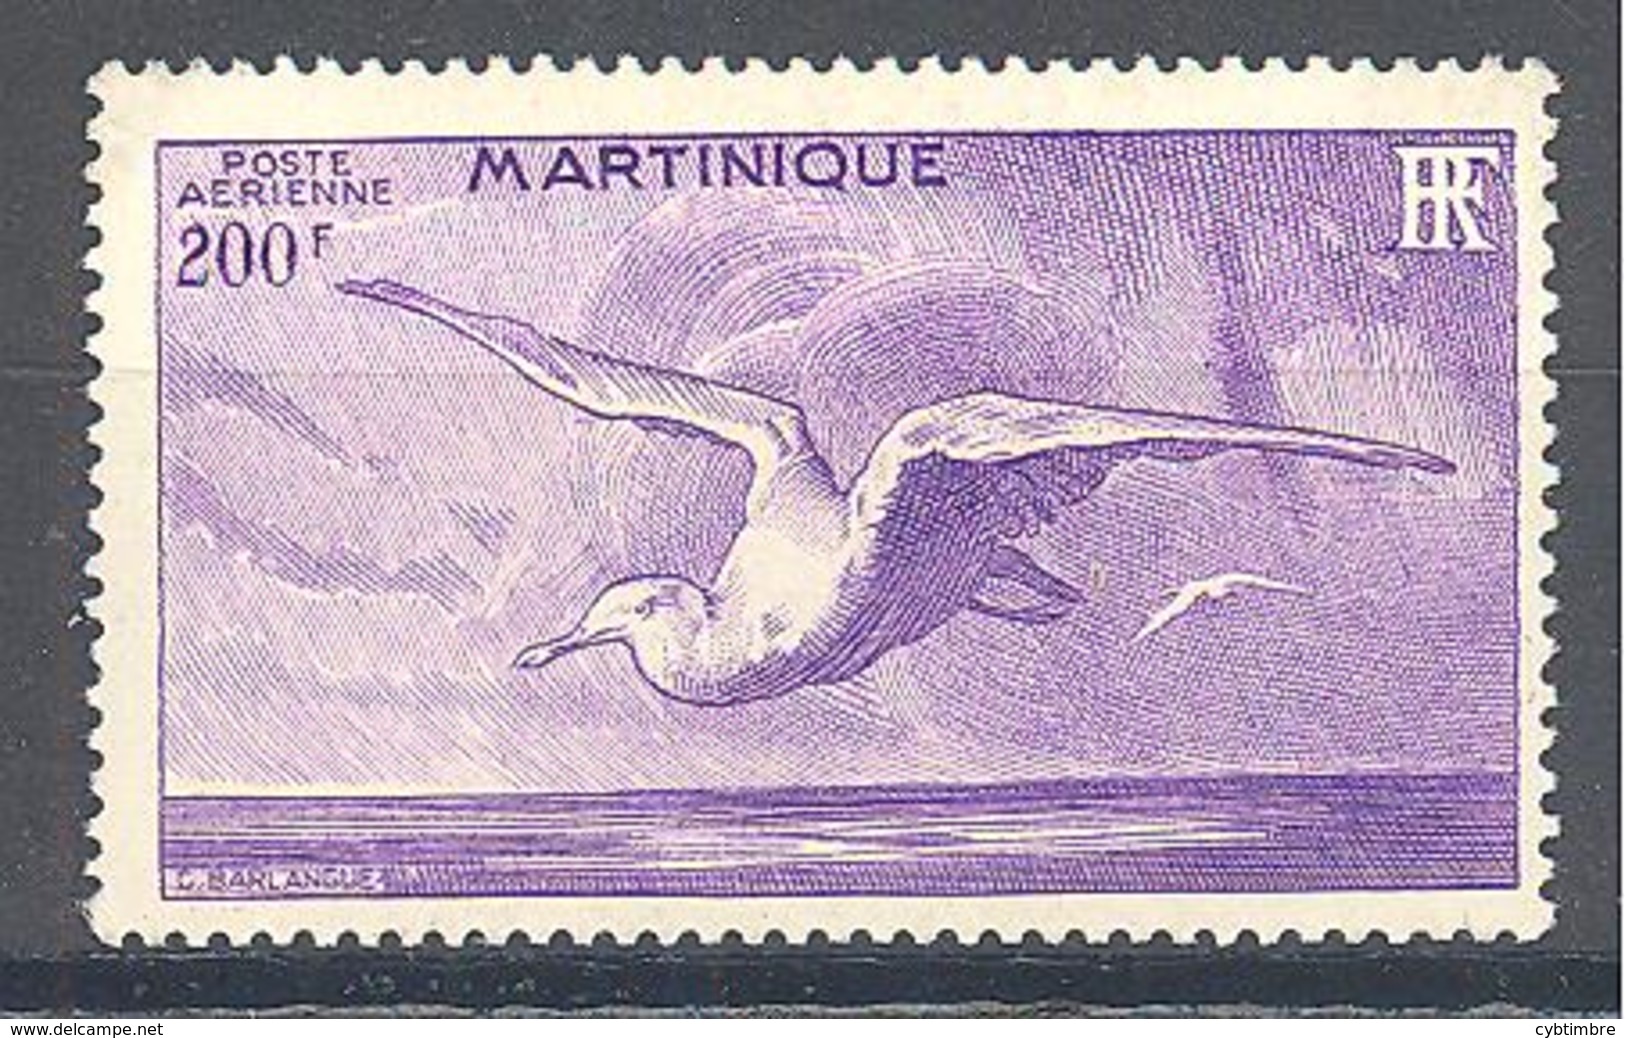 Martinique: Yvert N° A 15*; Oiseau; Bird; Mouette - Airmail